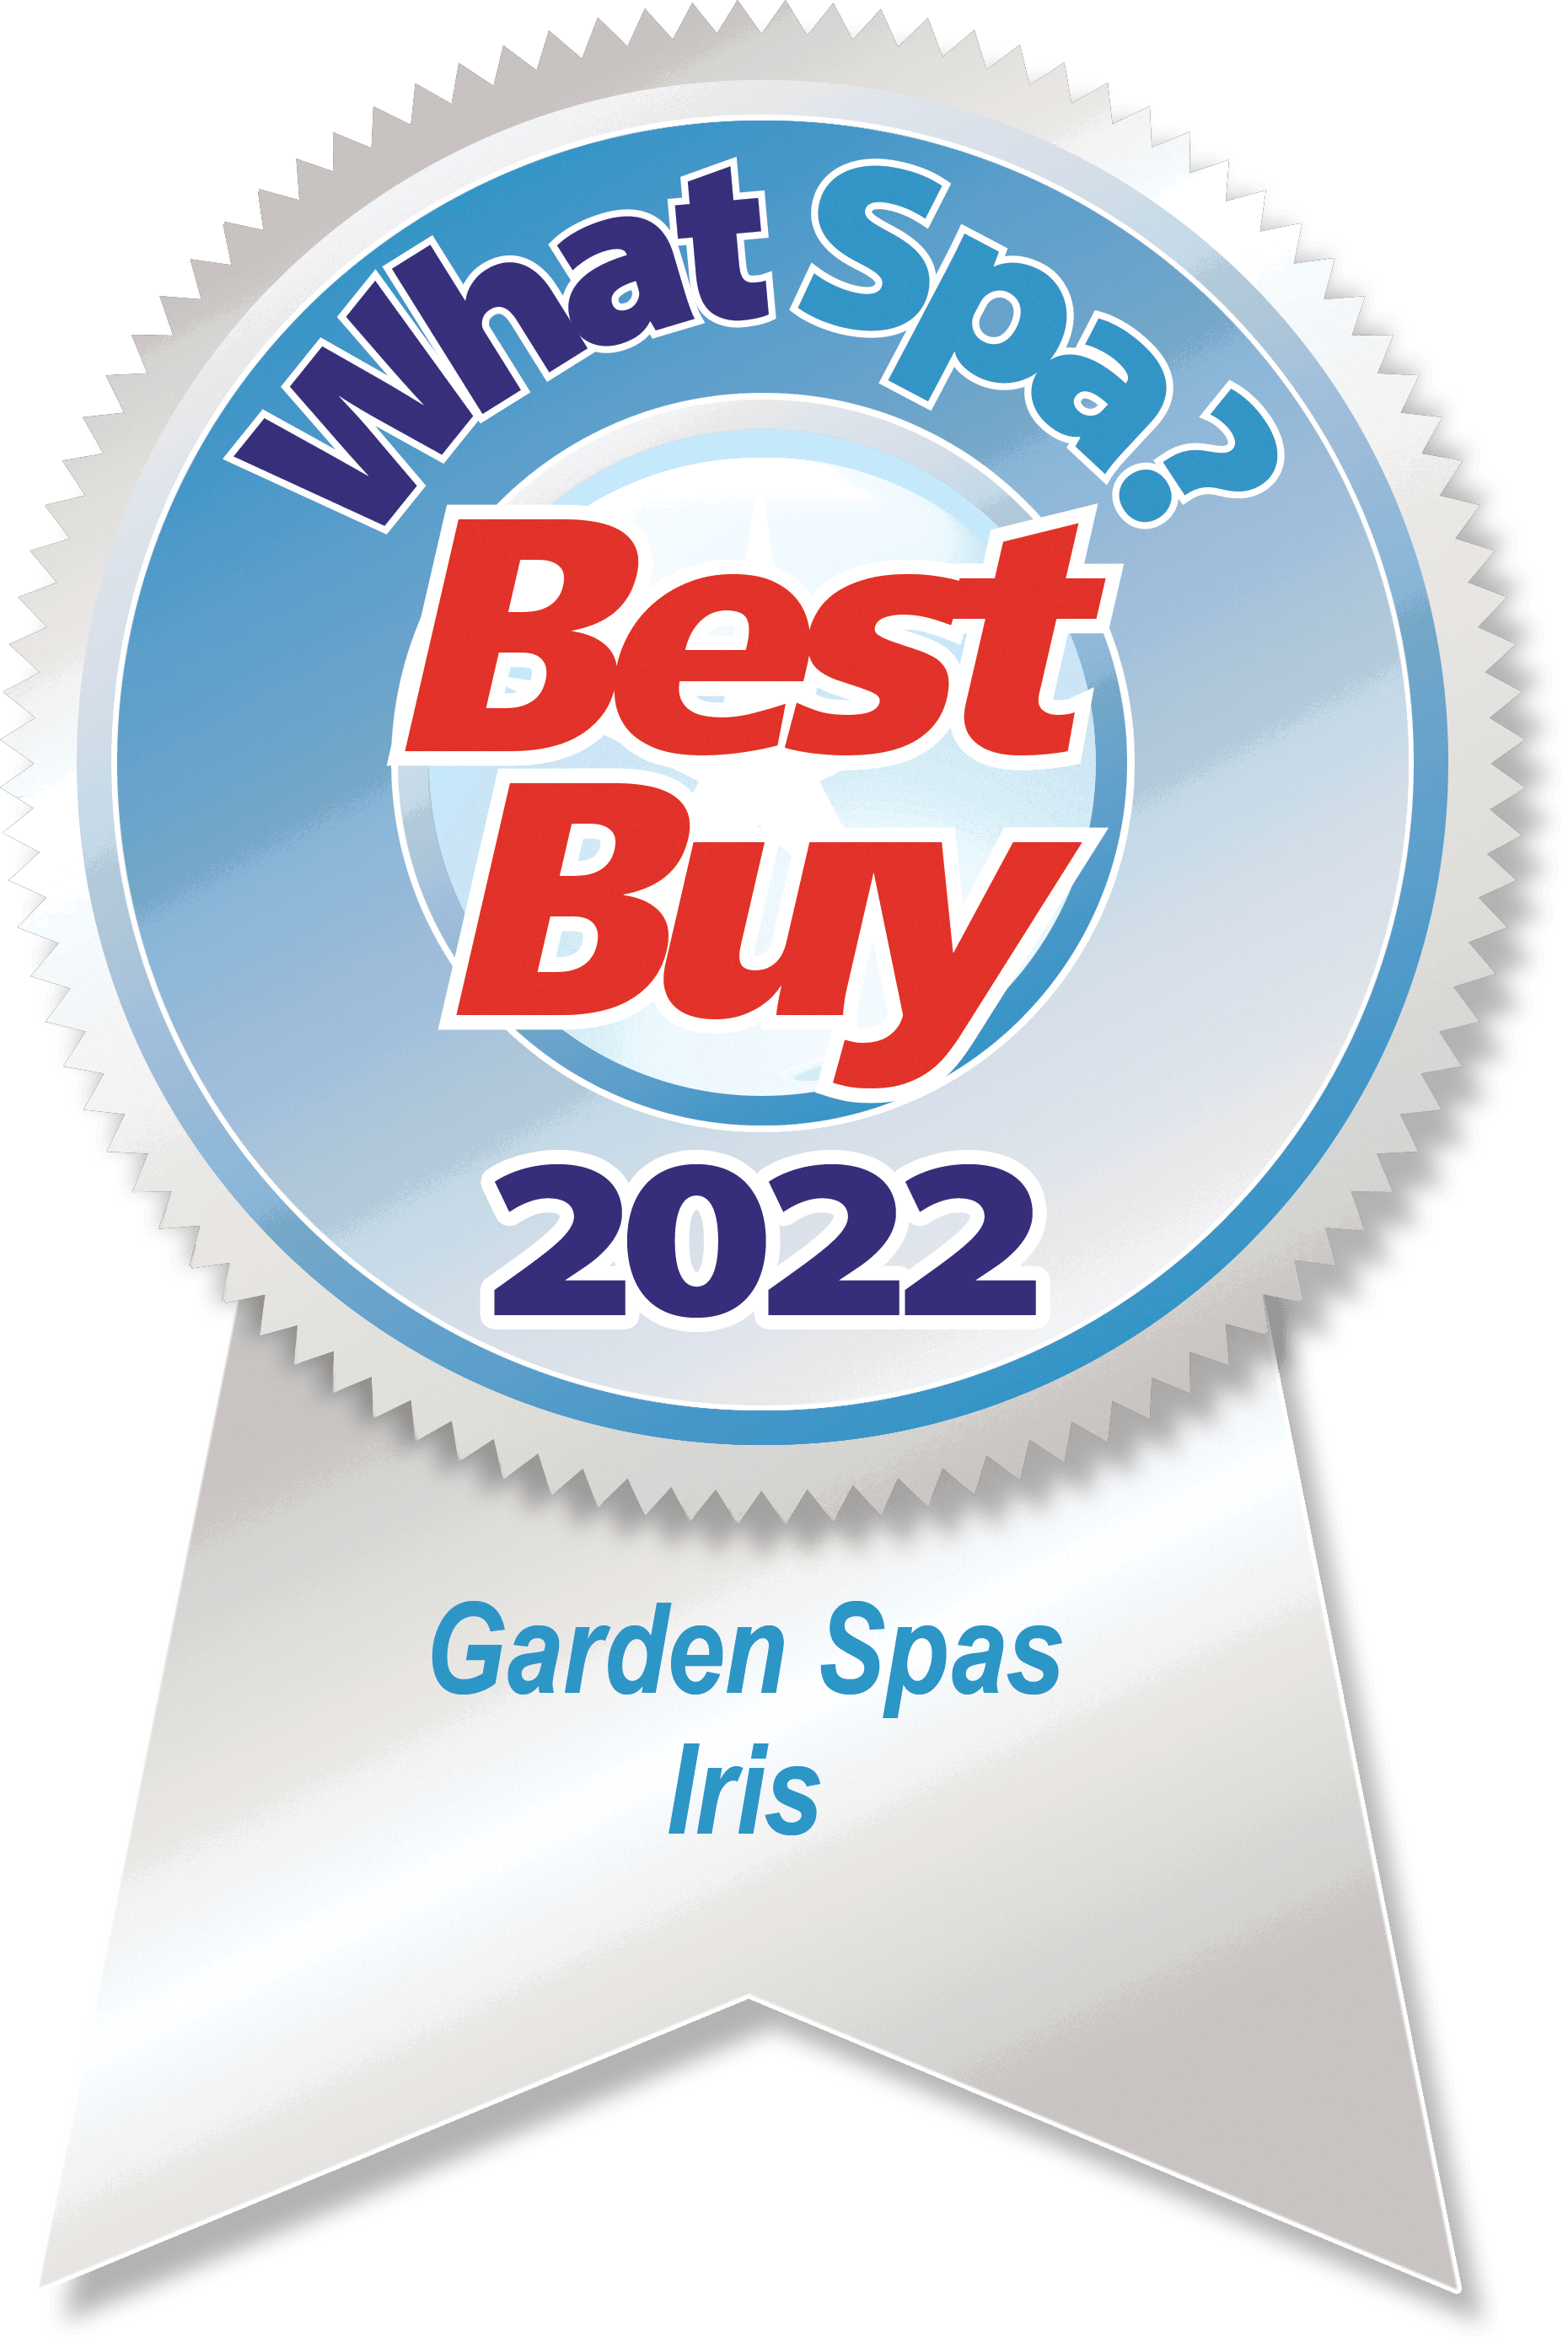 Garden Spas Iris What Spa 2022